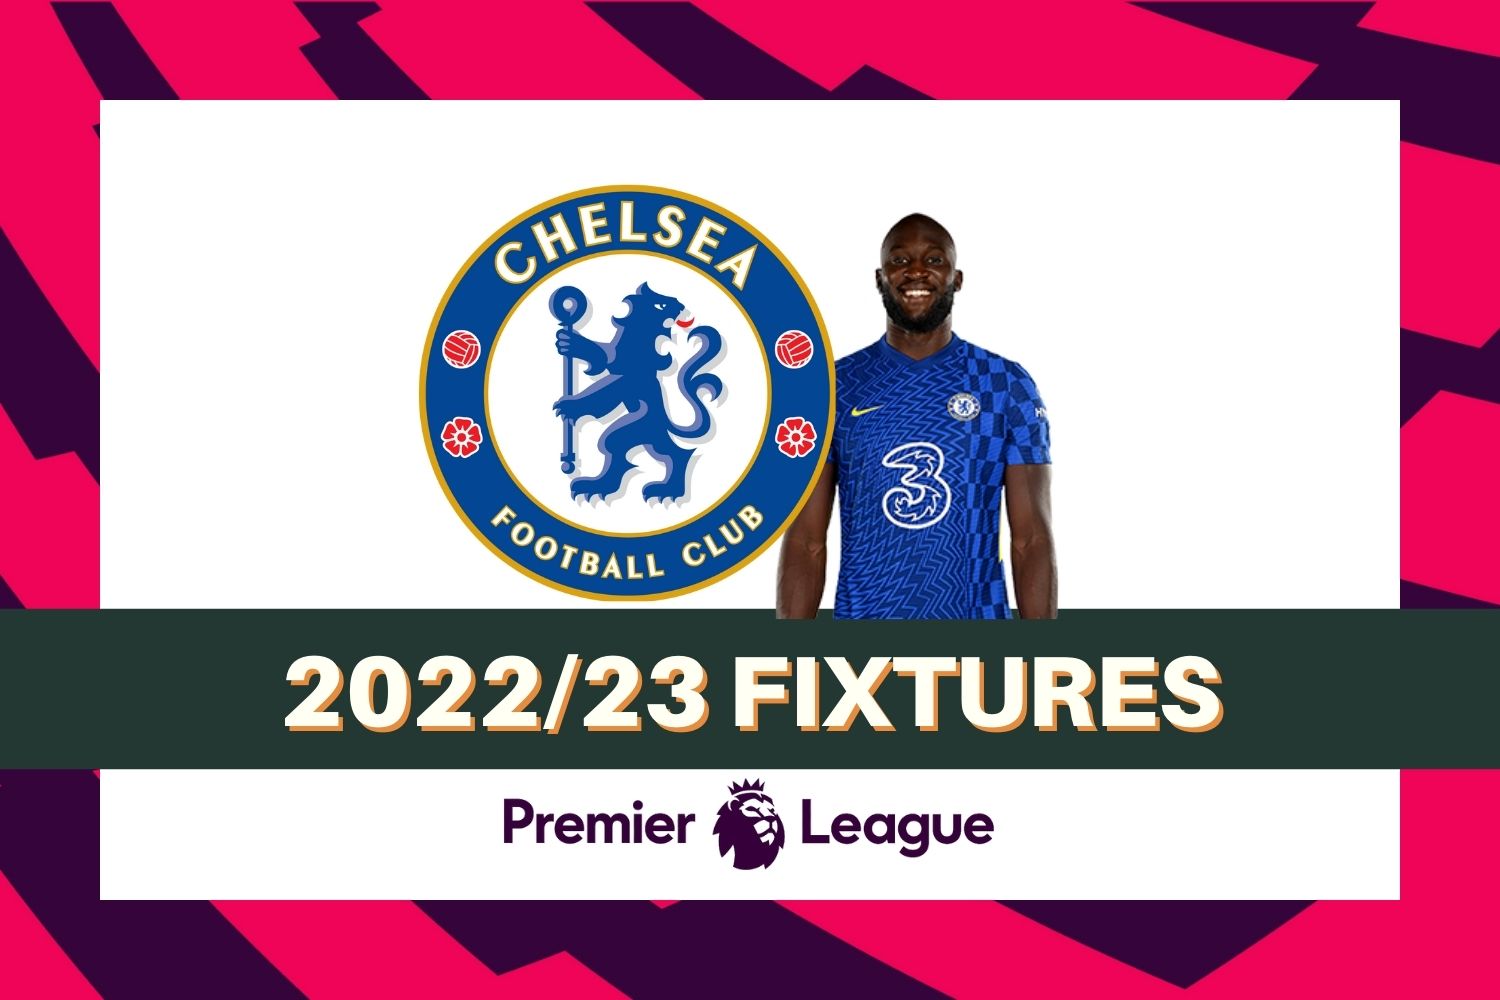 Chelsea’s 2022/23 Premier League fixtures & schedule